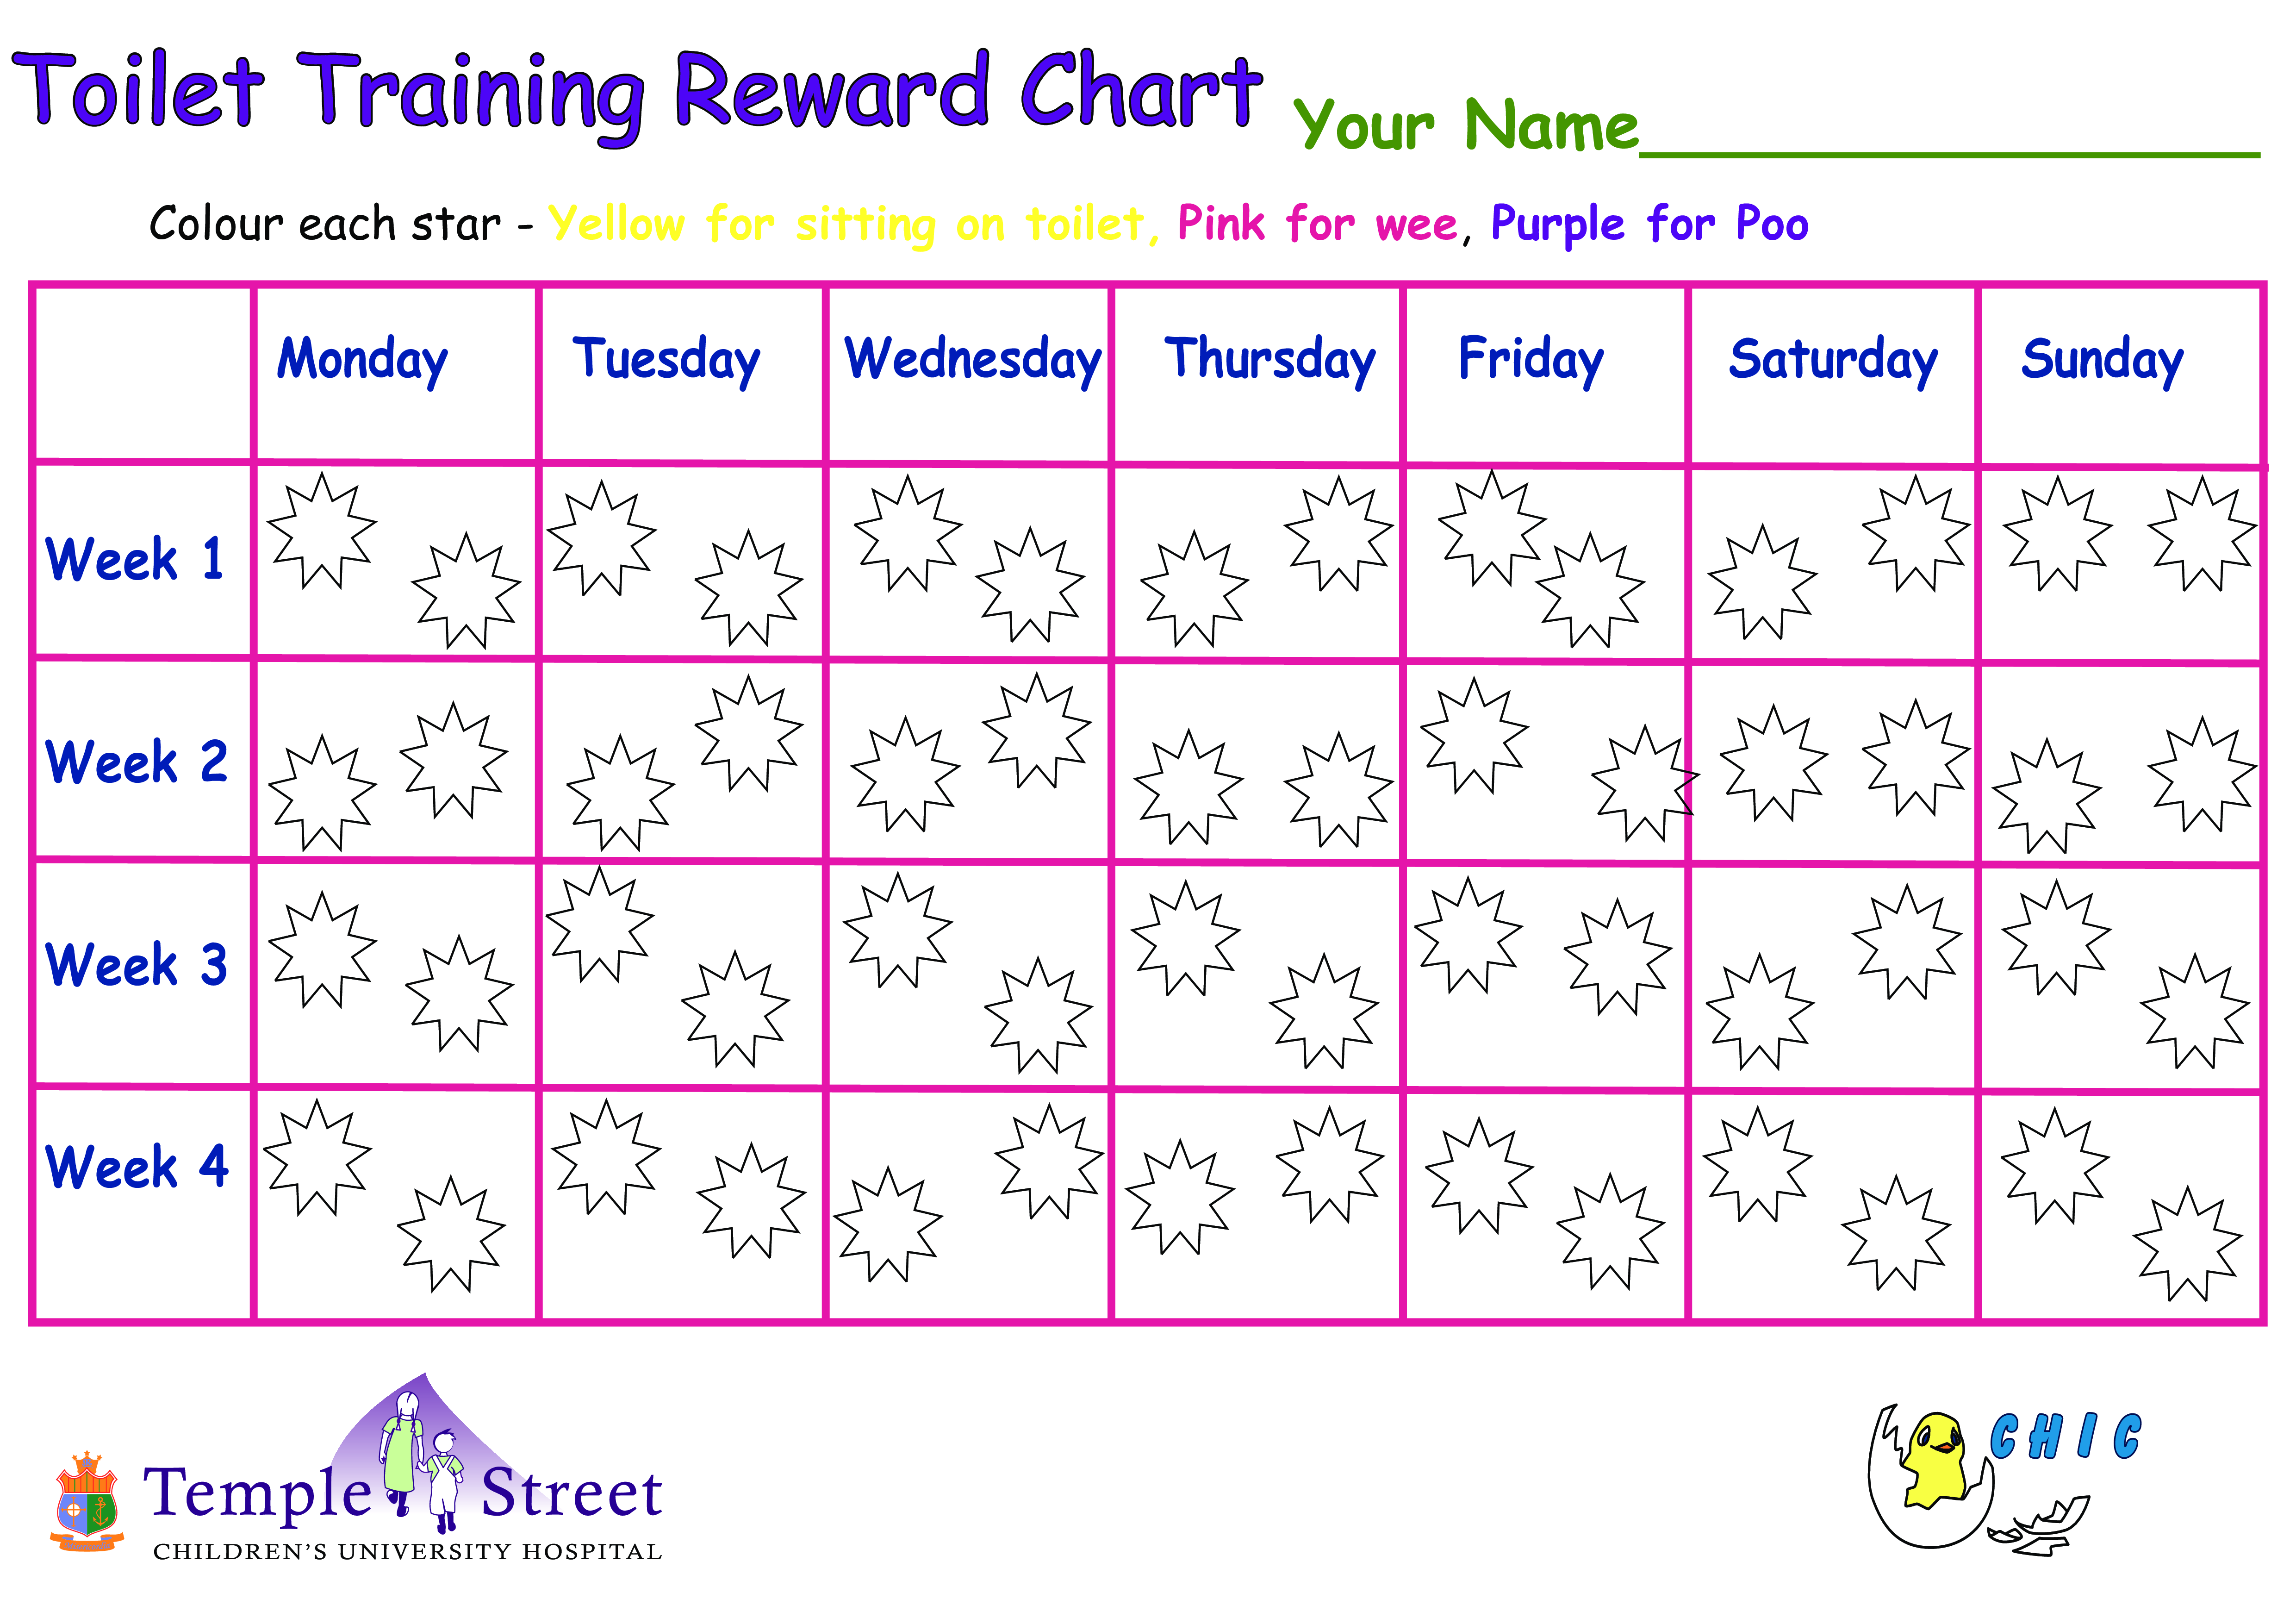 Training Chart main image